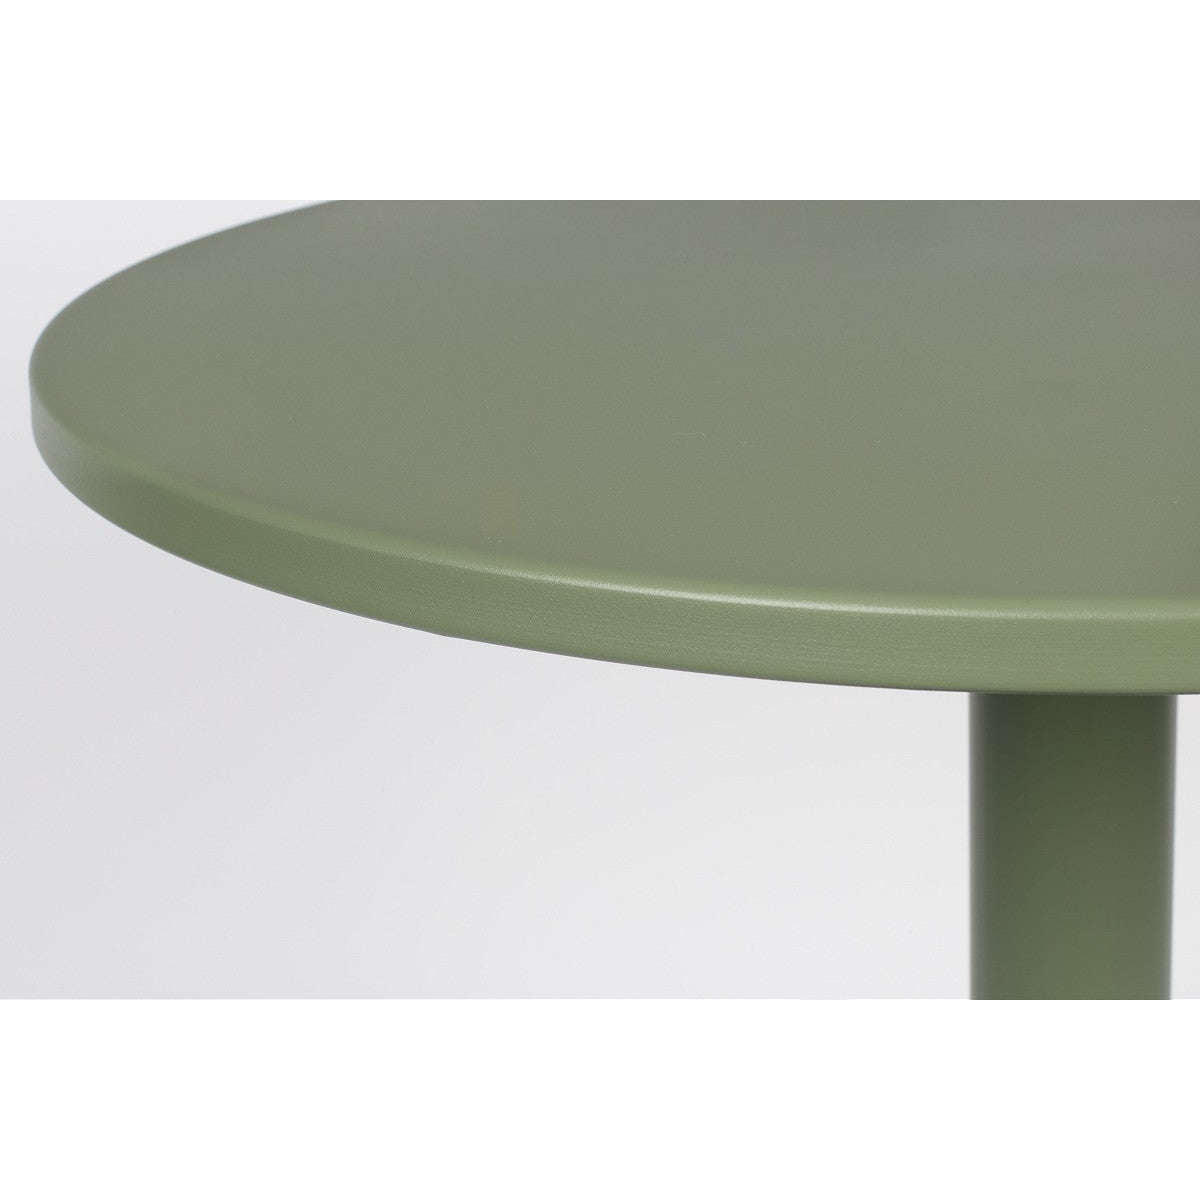 Zuiver Metsu bistro tafel Ø70 cm groen